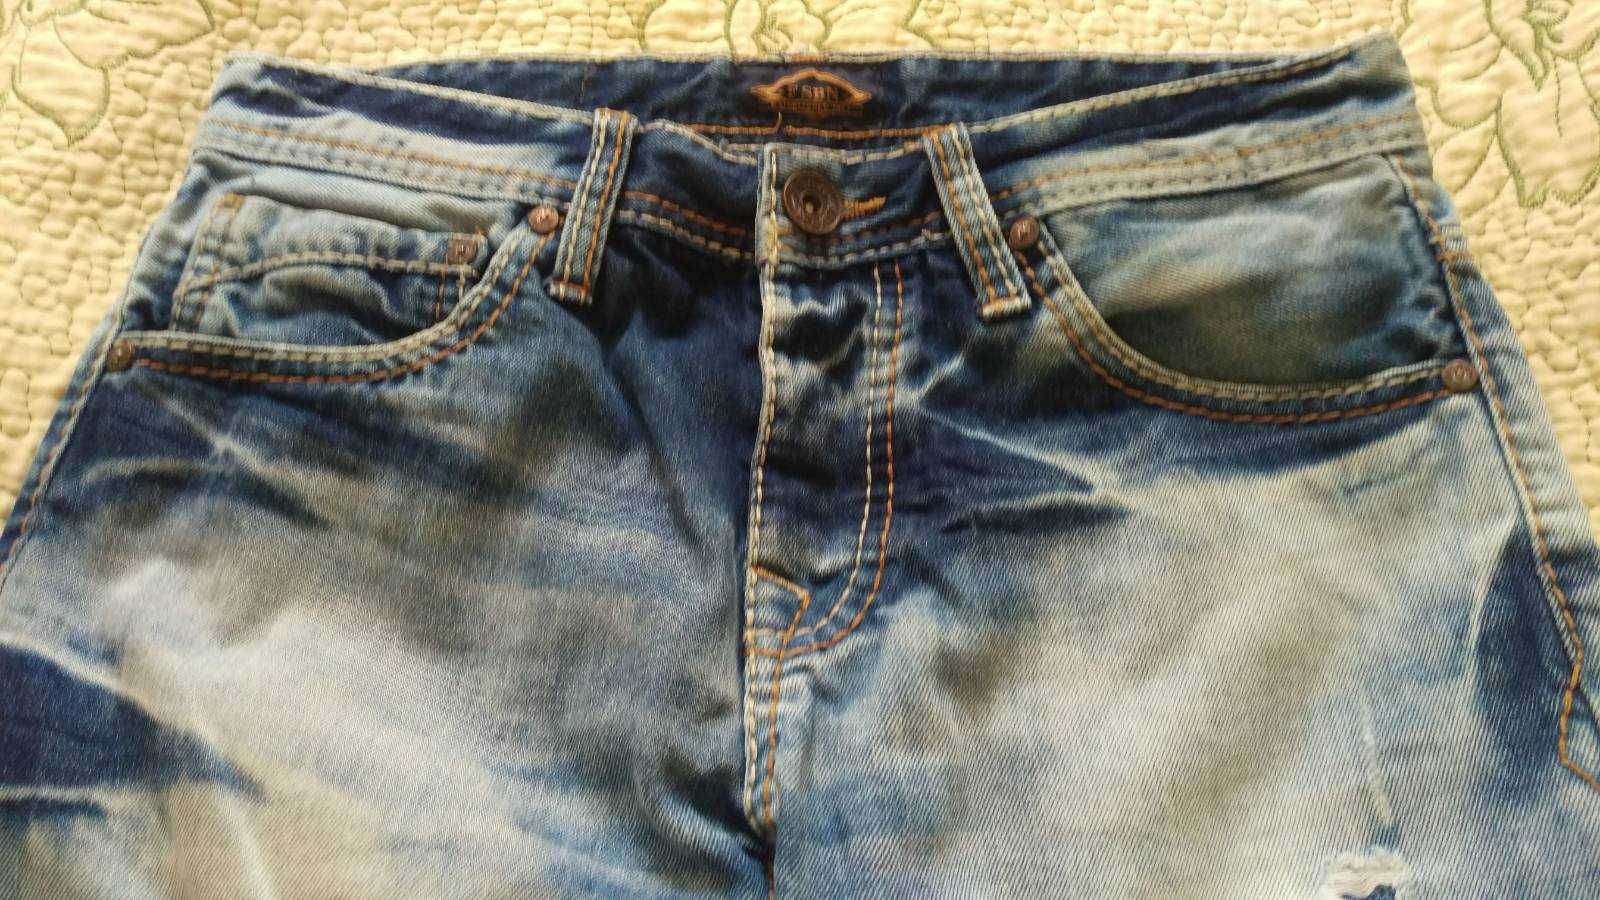 шорты джинсовые подросток состояние новых,хлопок размер 44 или S